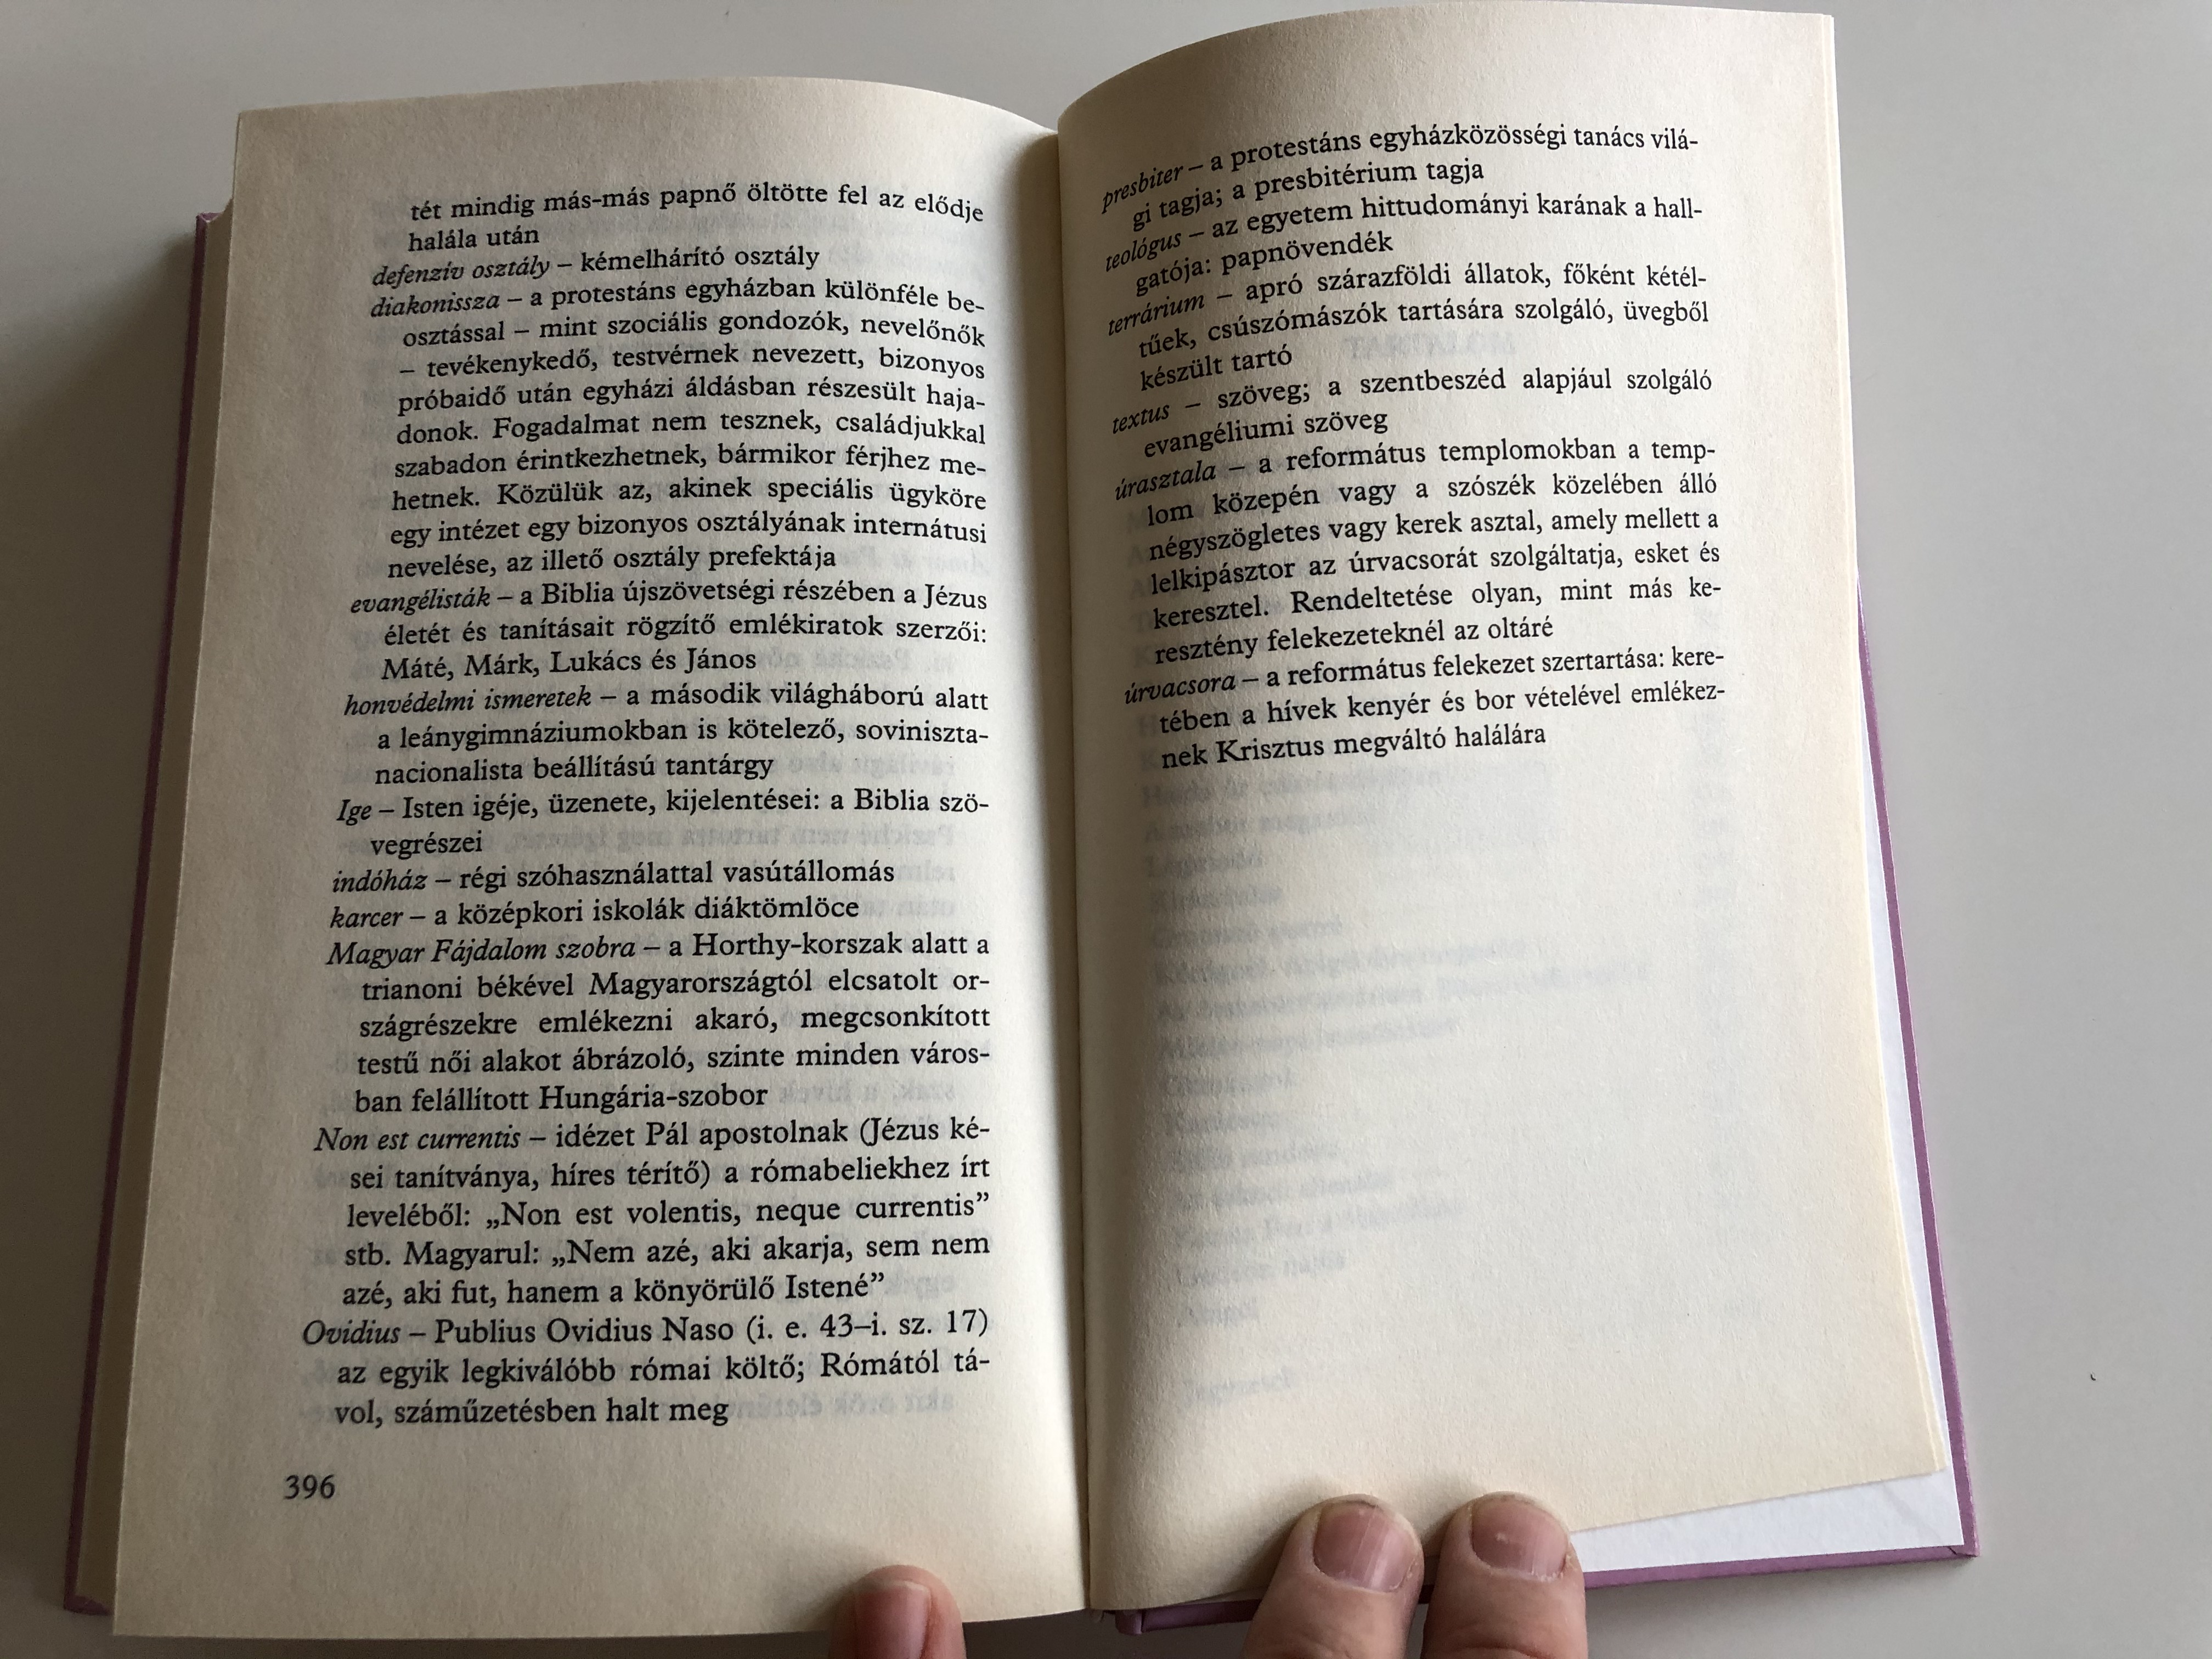  Abigél by Szabó Magda - Hungarian novel  1.JPG